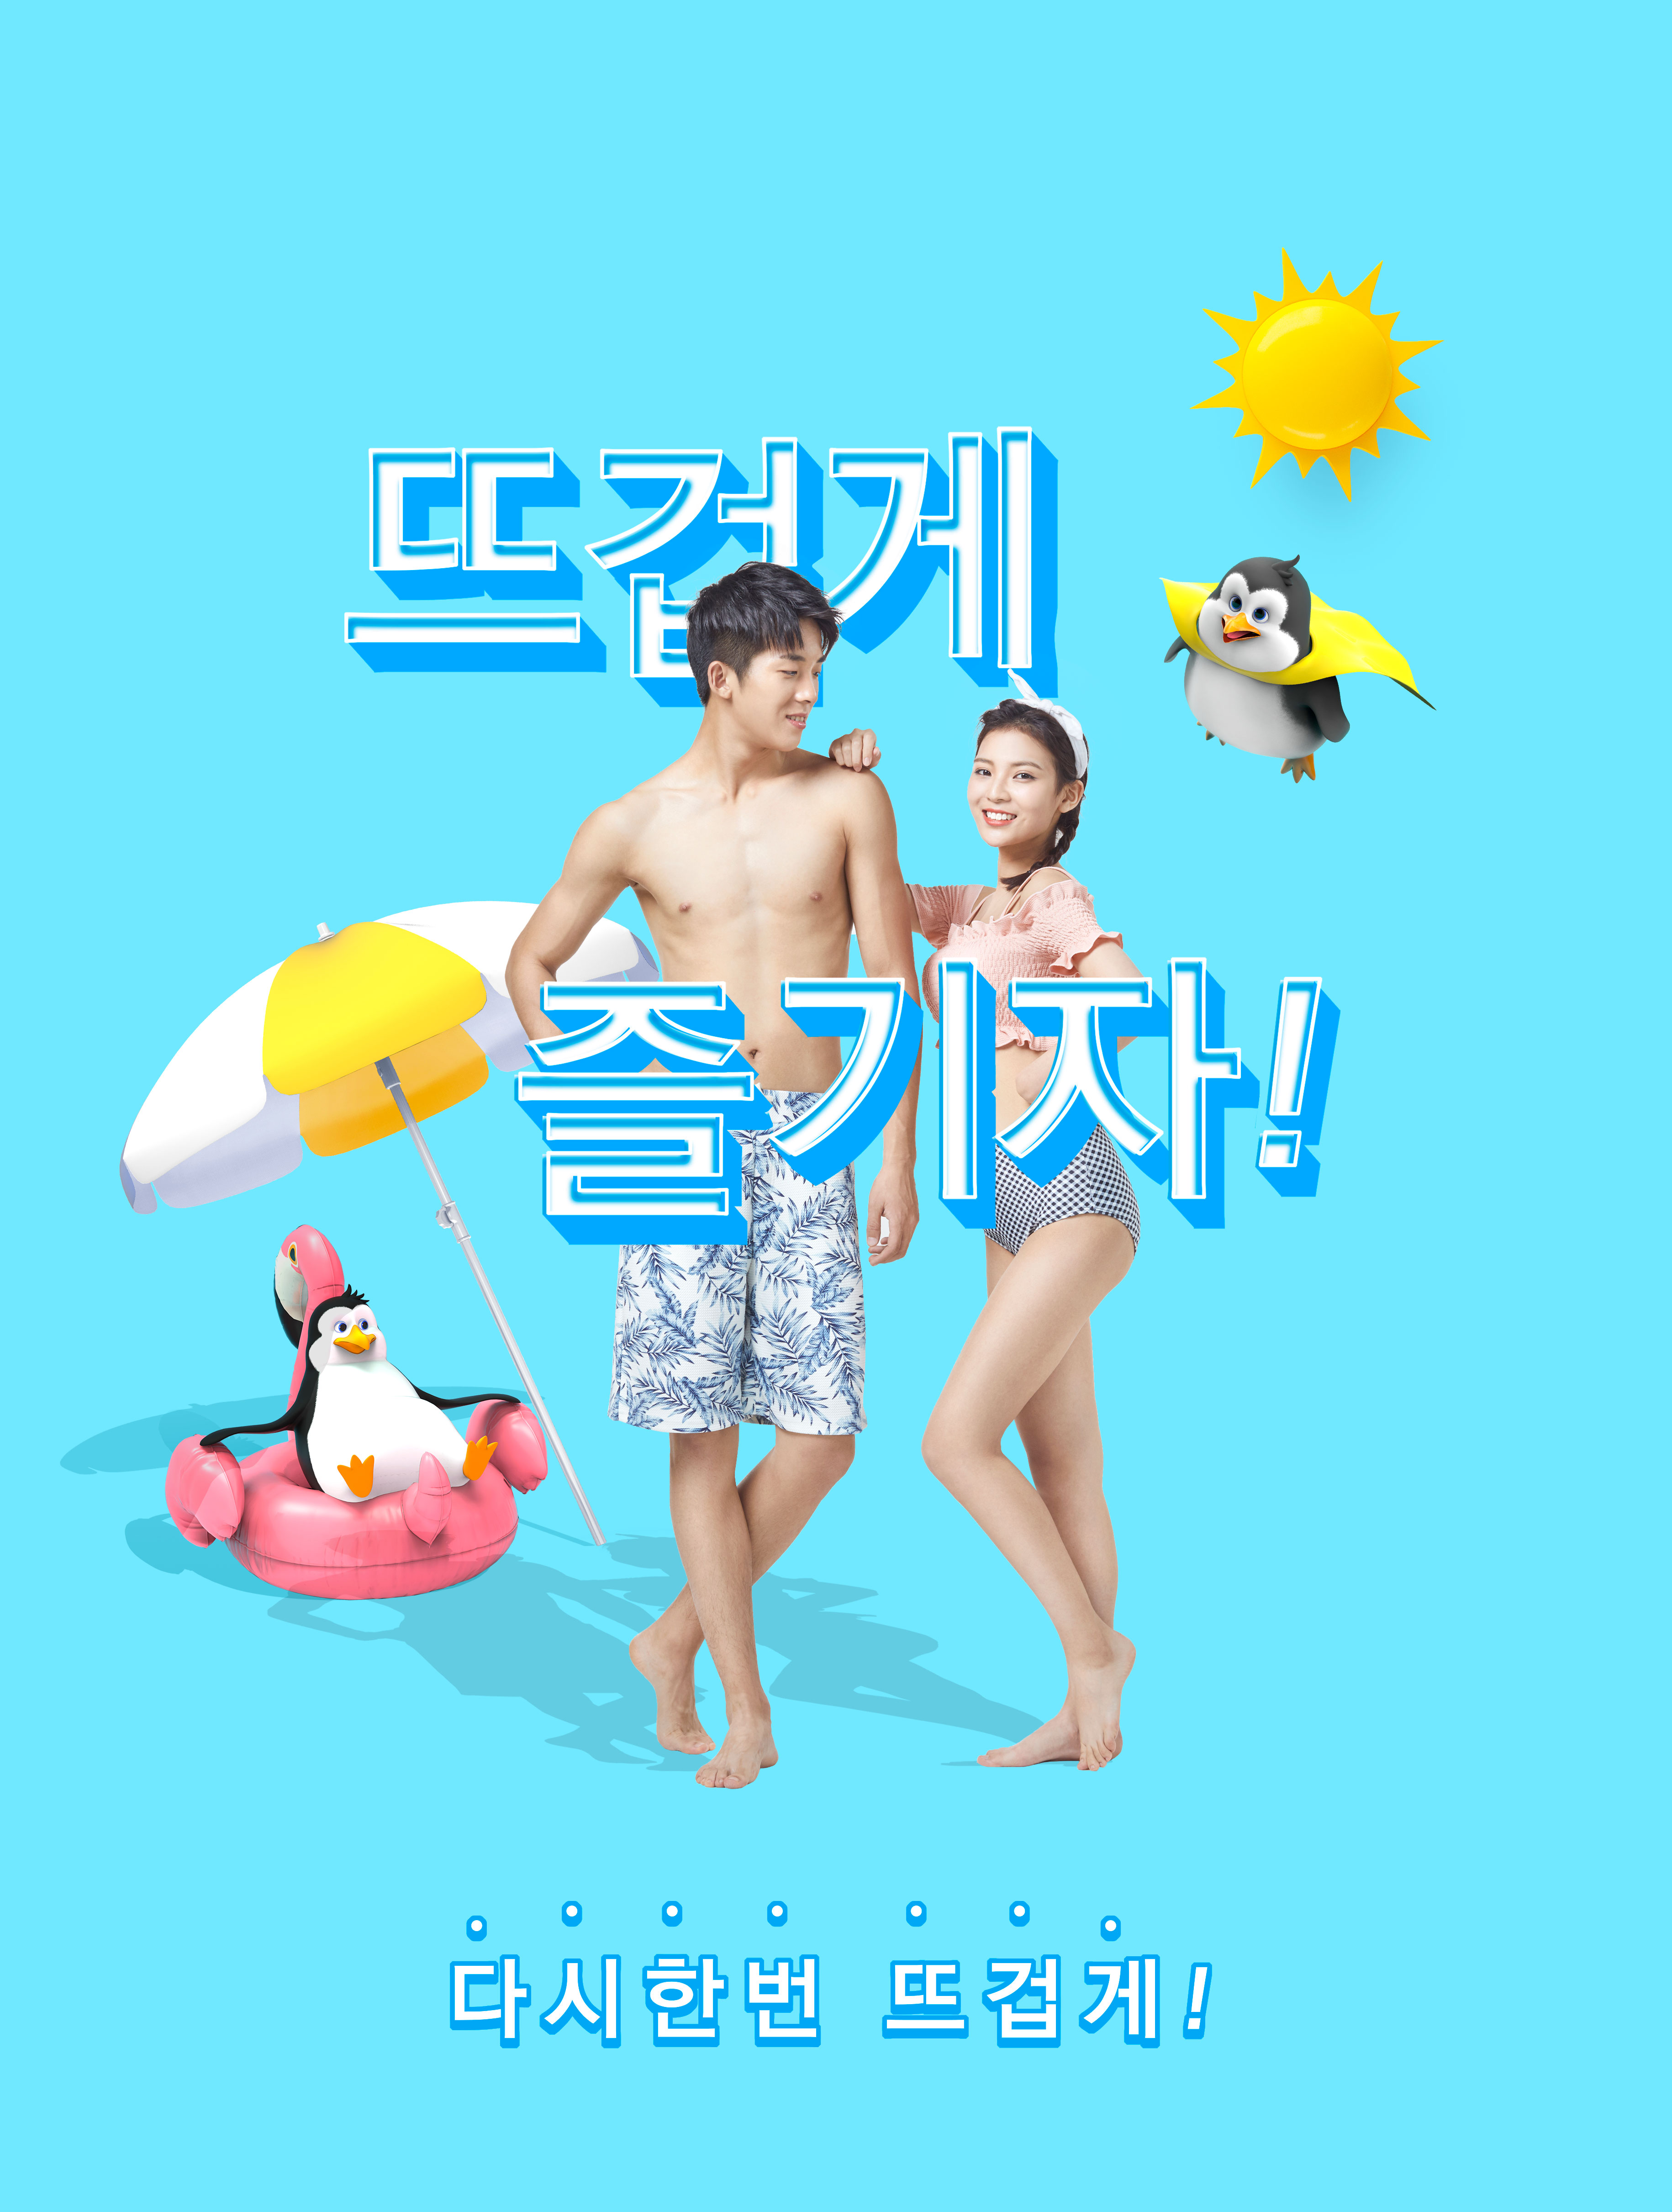 酷暑夏季度假活动广告海报设计套装[PSD]插图(3)